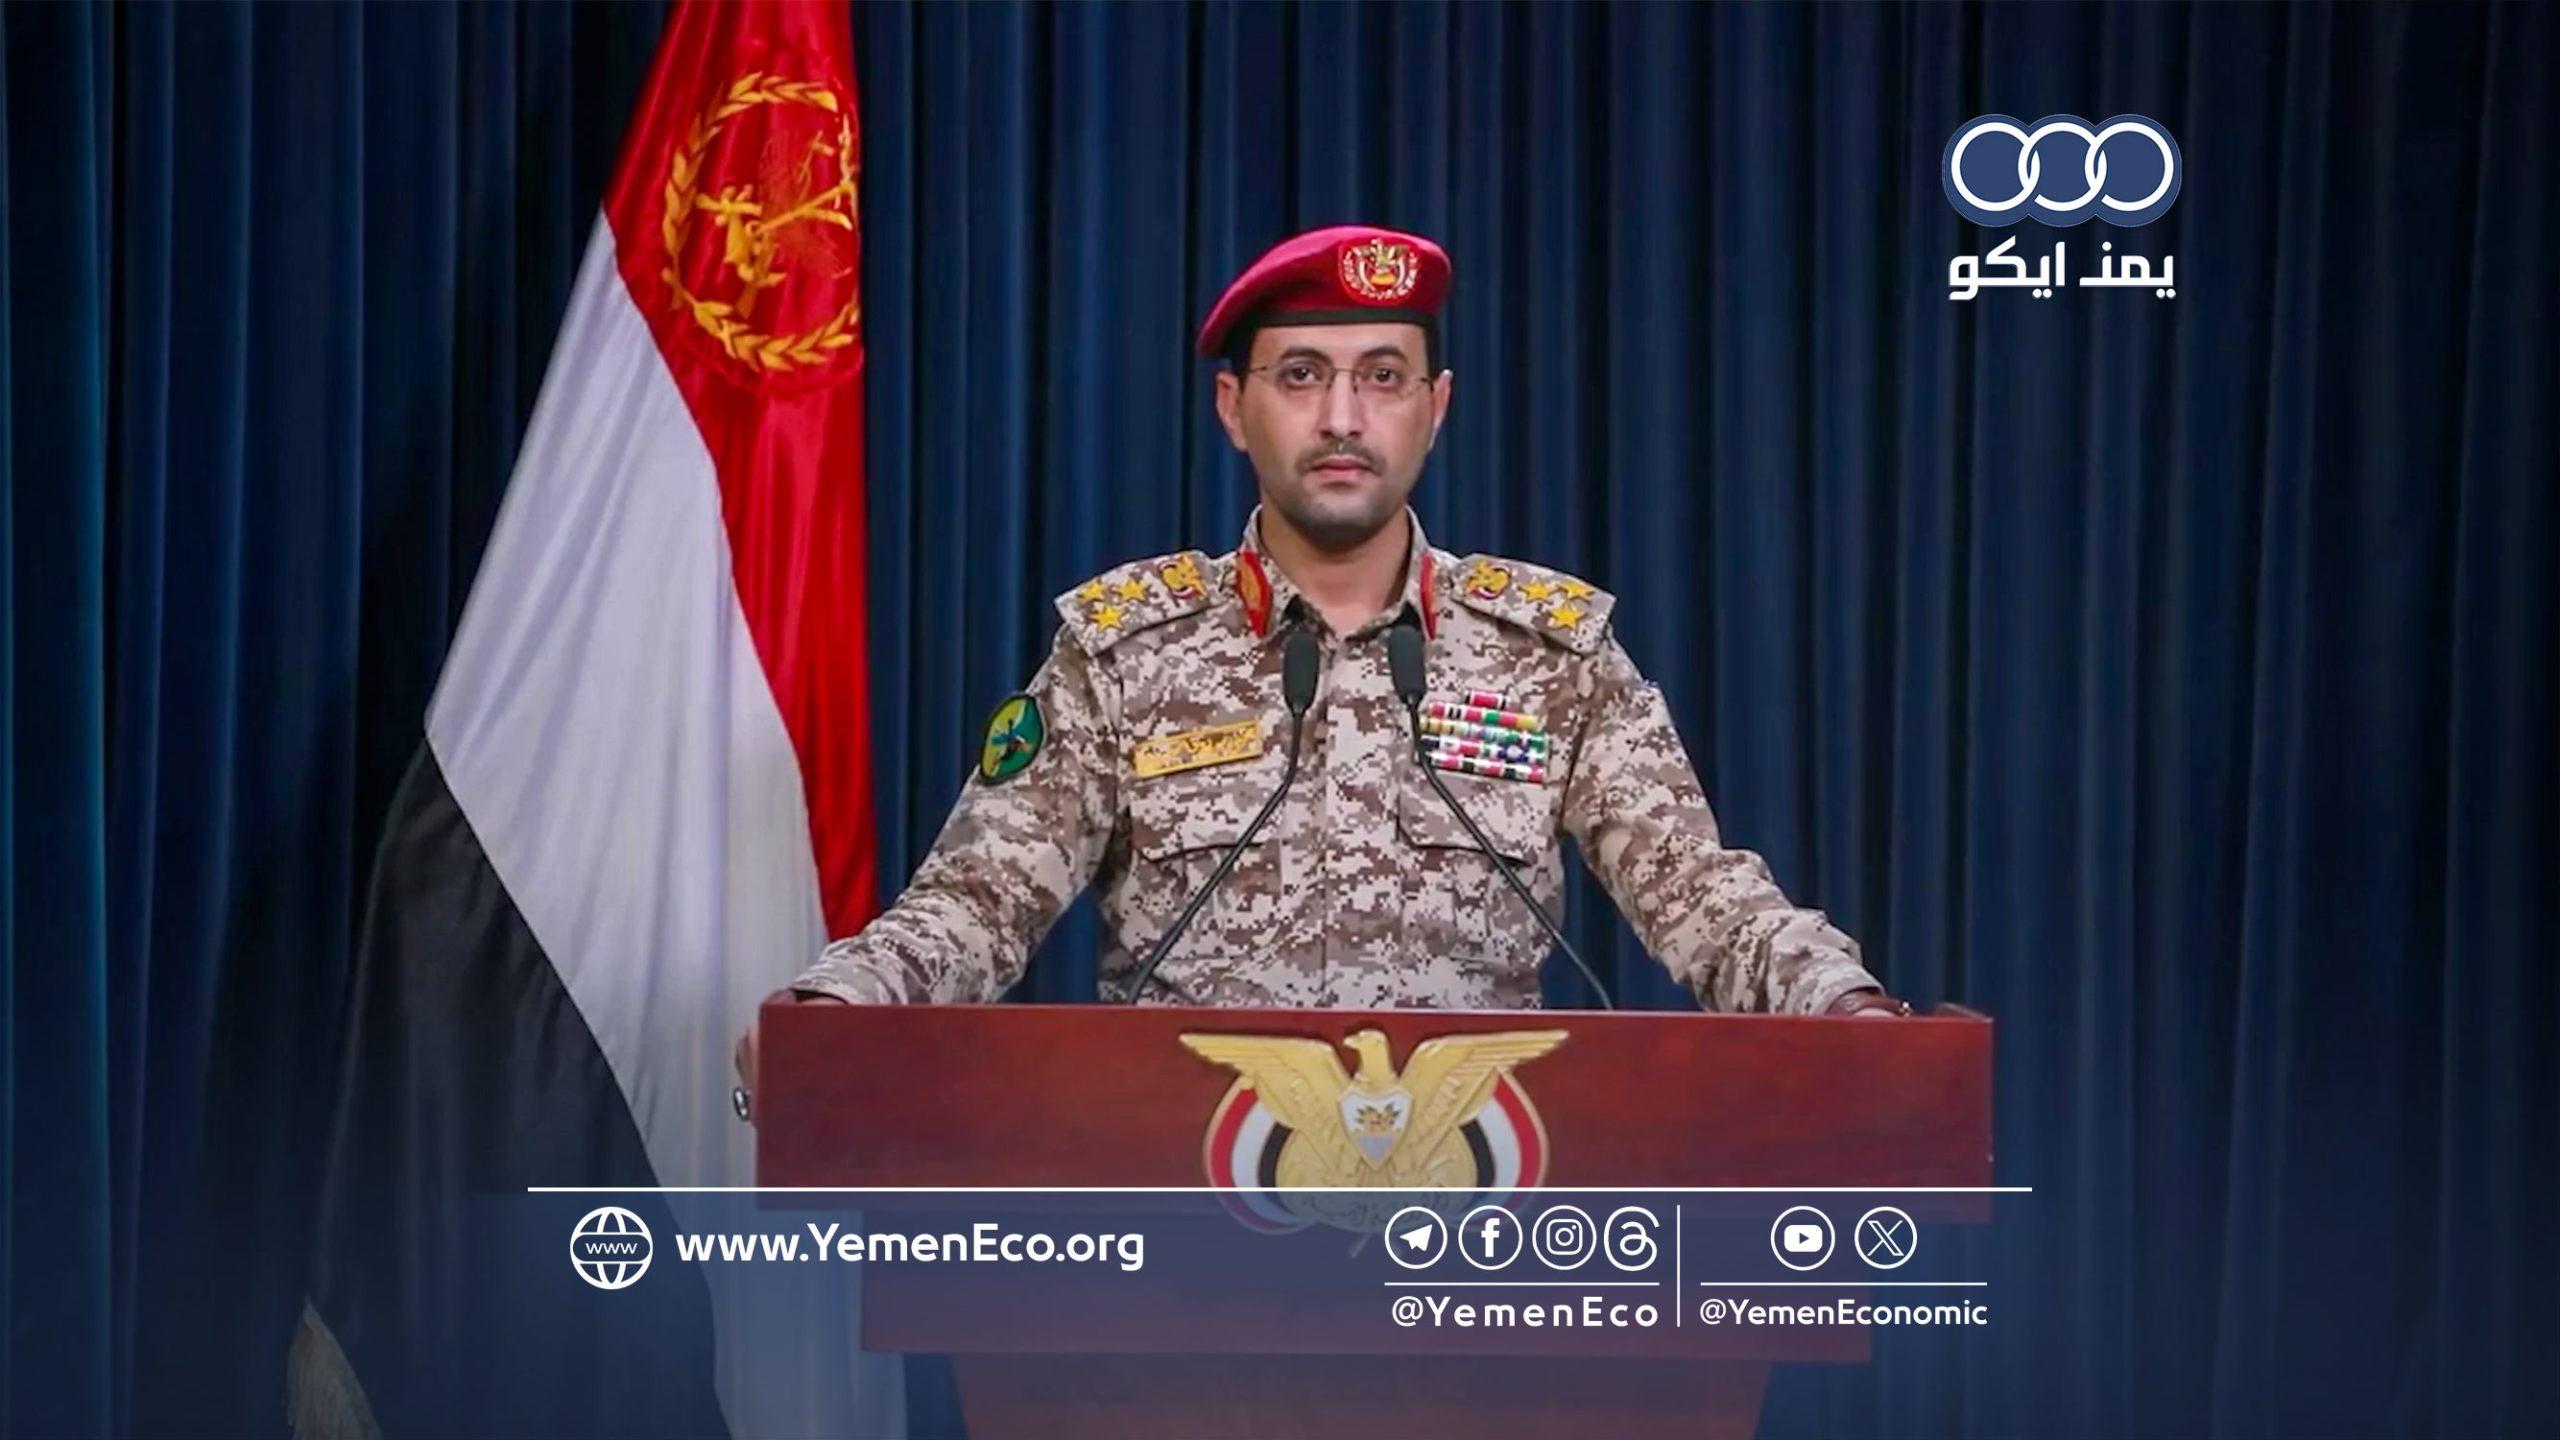 قوات صنعاء تعلن تنفيذ ثلاث عمليات في خليج عدن والمحيط الهندي